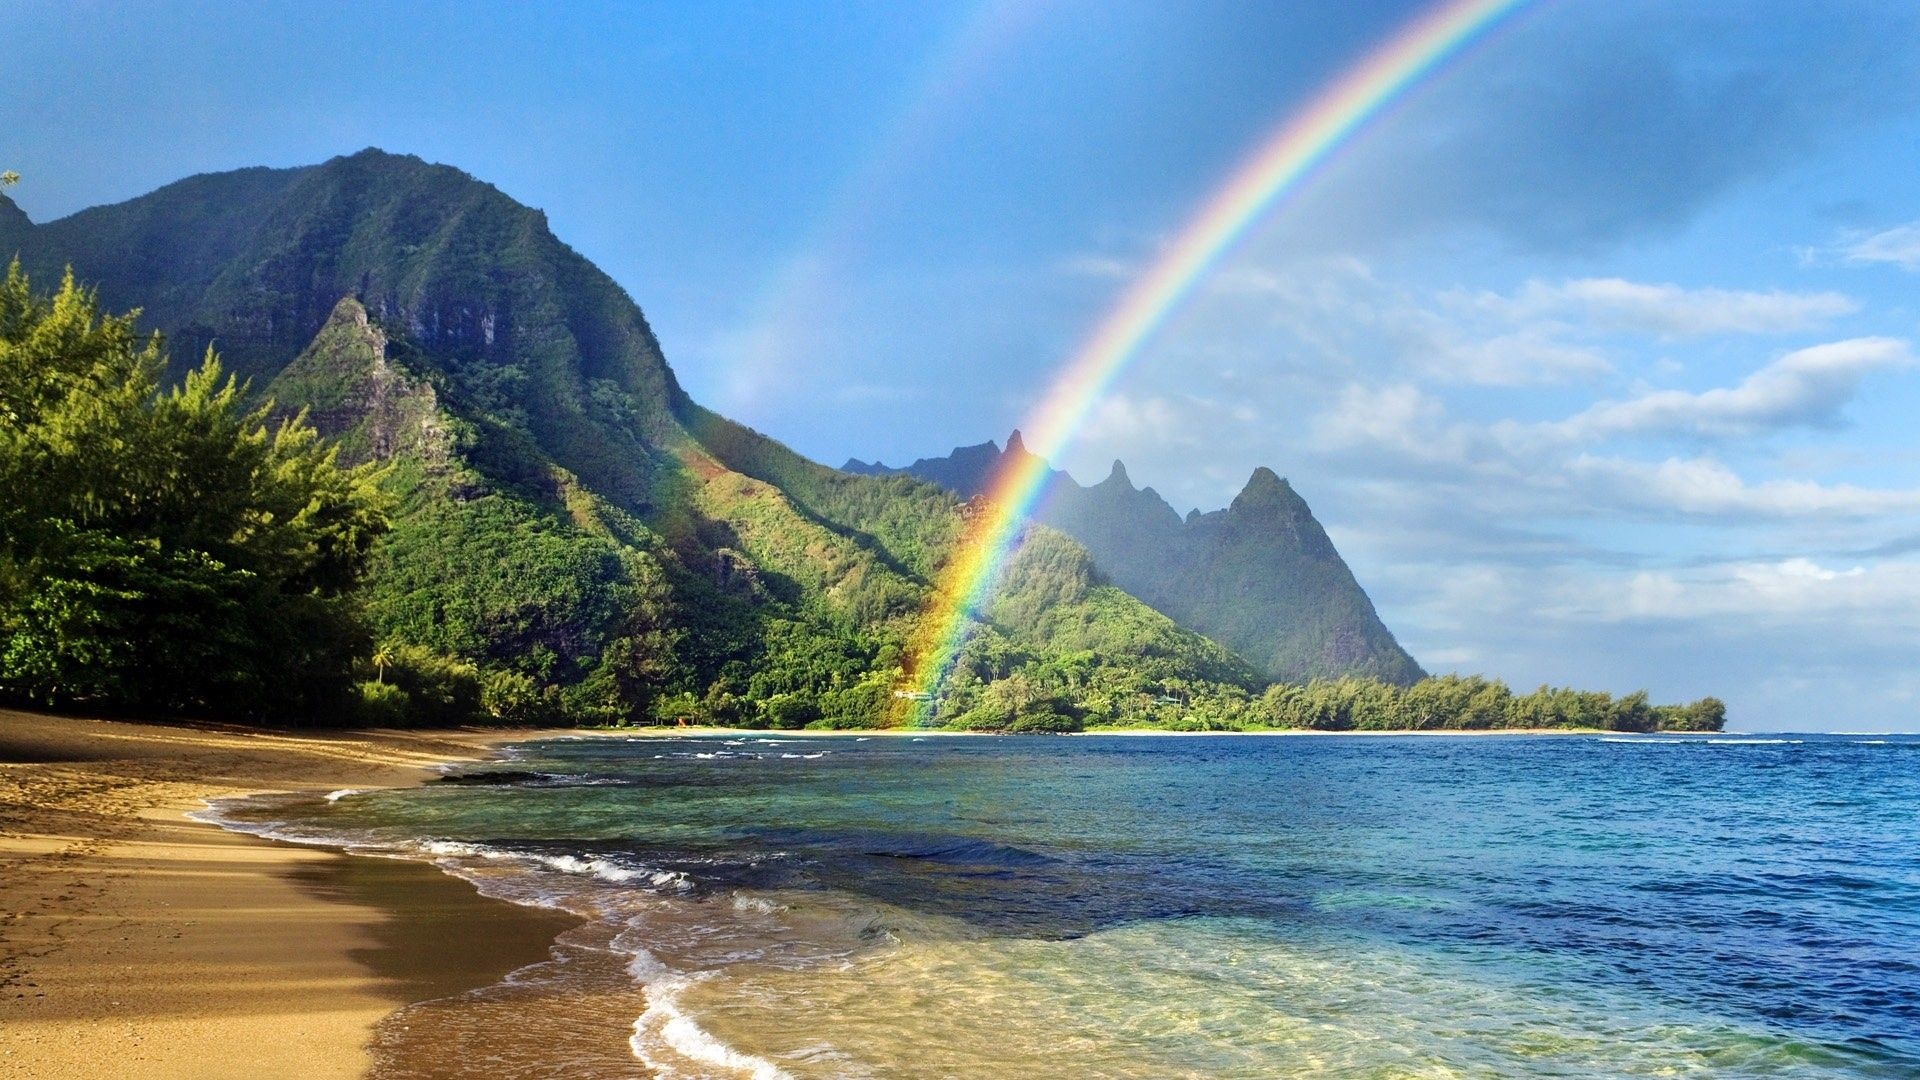 Hawaiian Ocean, Beautiful beach wallpapers, Tropical paradise, Ocean tranquility, 1920x1080 Full HD Desktop